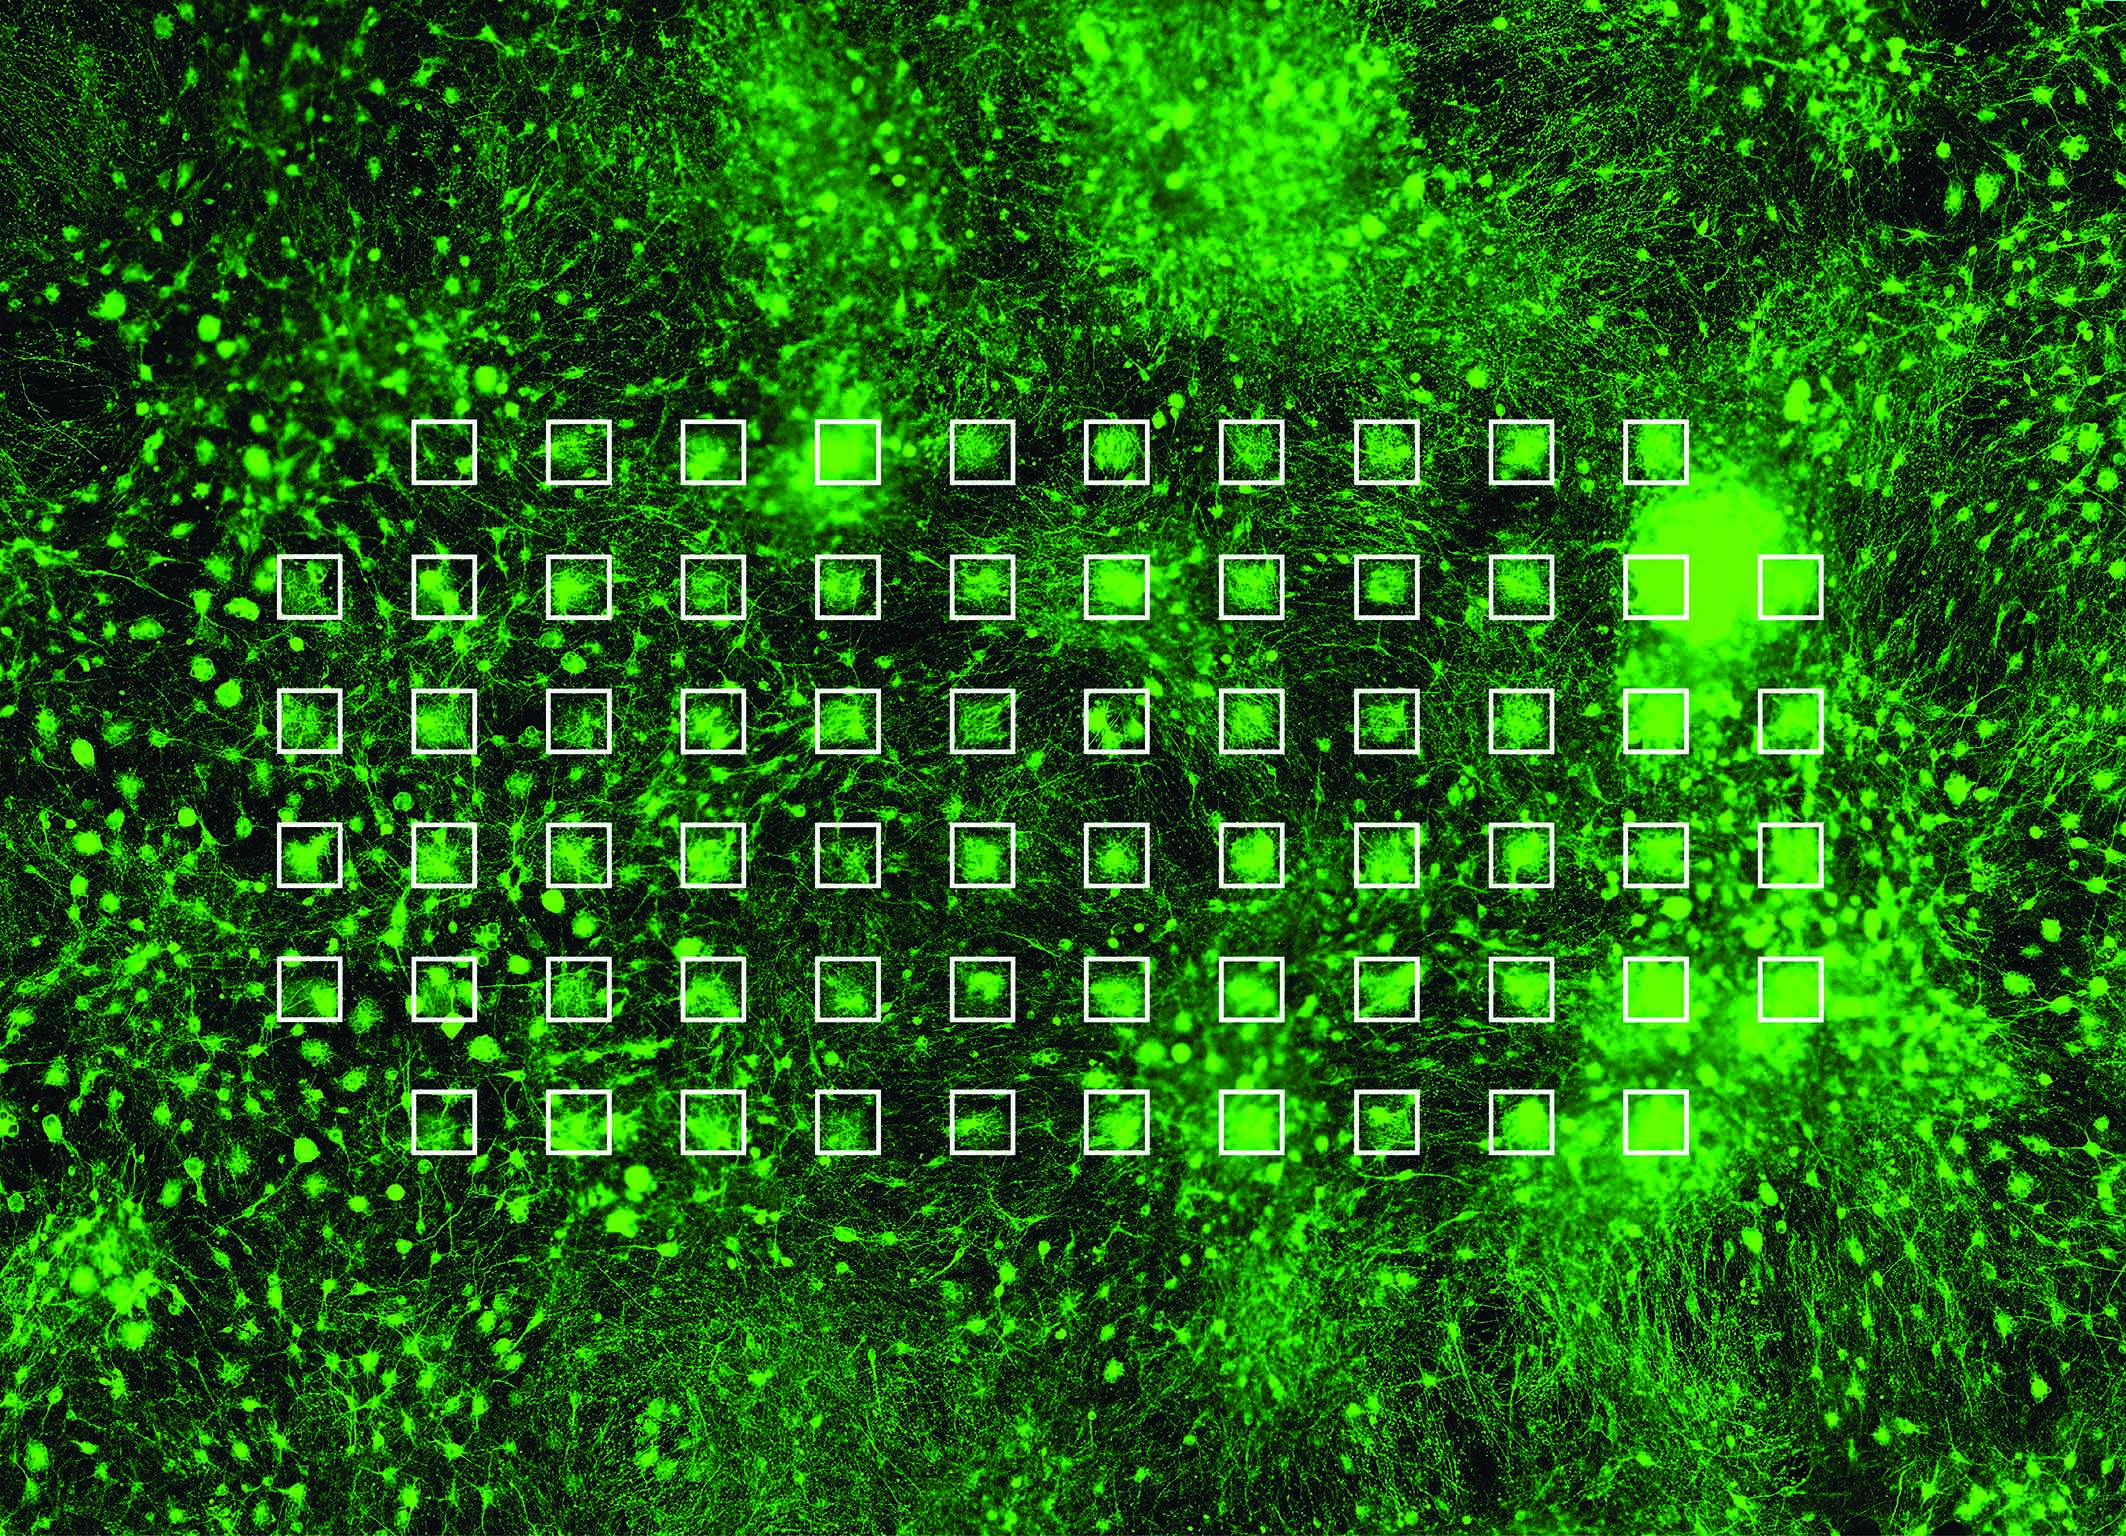 In grün werden Neuronen dargestellt, welche auf einem MEA gewachsen sind und ein Netzwerk gebildet haben. Die einzelnen Elektroden der MEA sind mit weissen Quadraten hervorgehoben. © Stephen Jenkinson, Institut für Infektionskrankheiten.